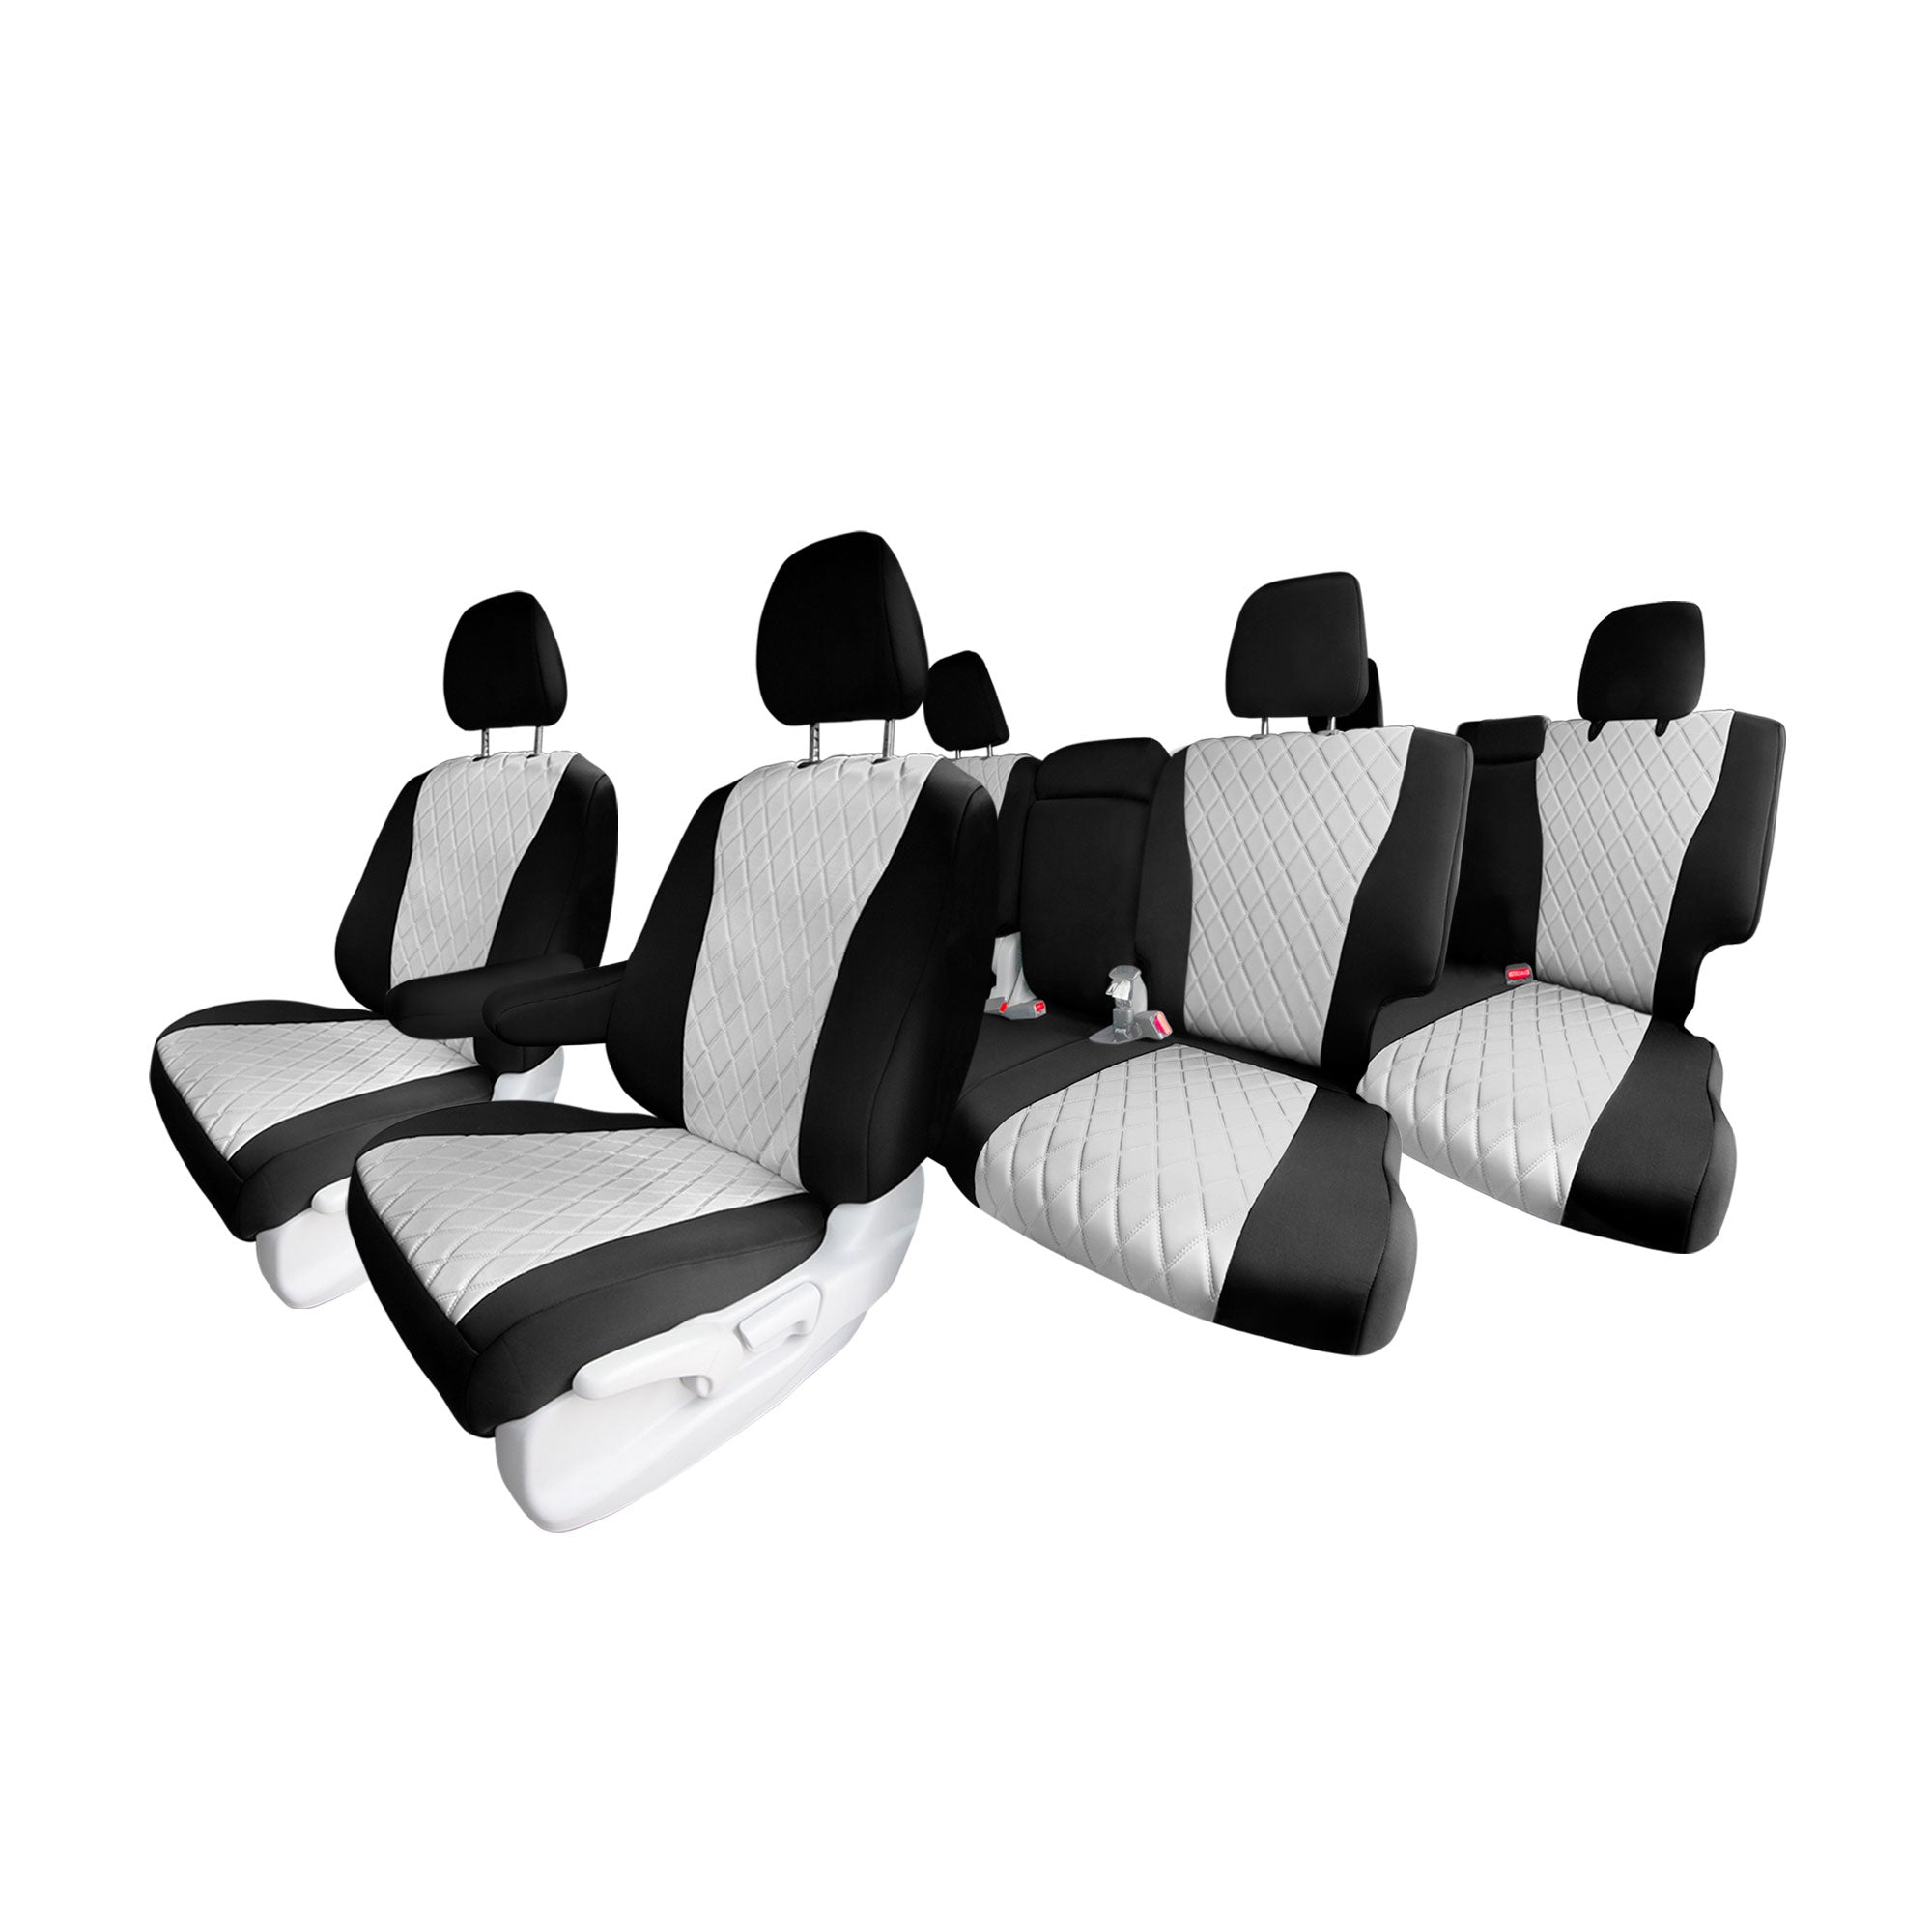 Honda Pilot 2016 - 2022 - Full Set Seat Covers - Gray Ultraflex Neoprene